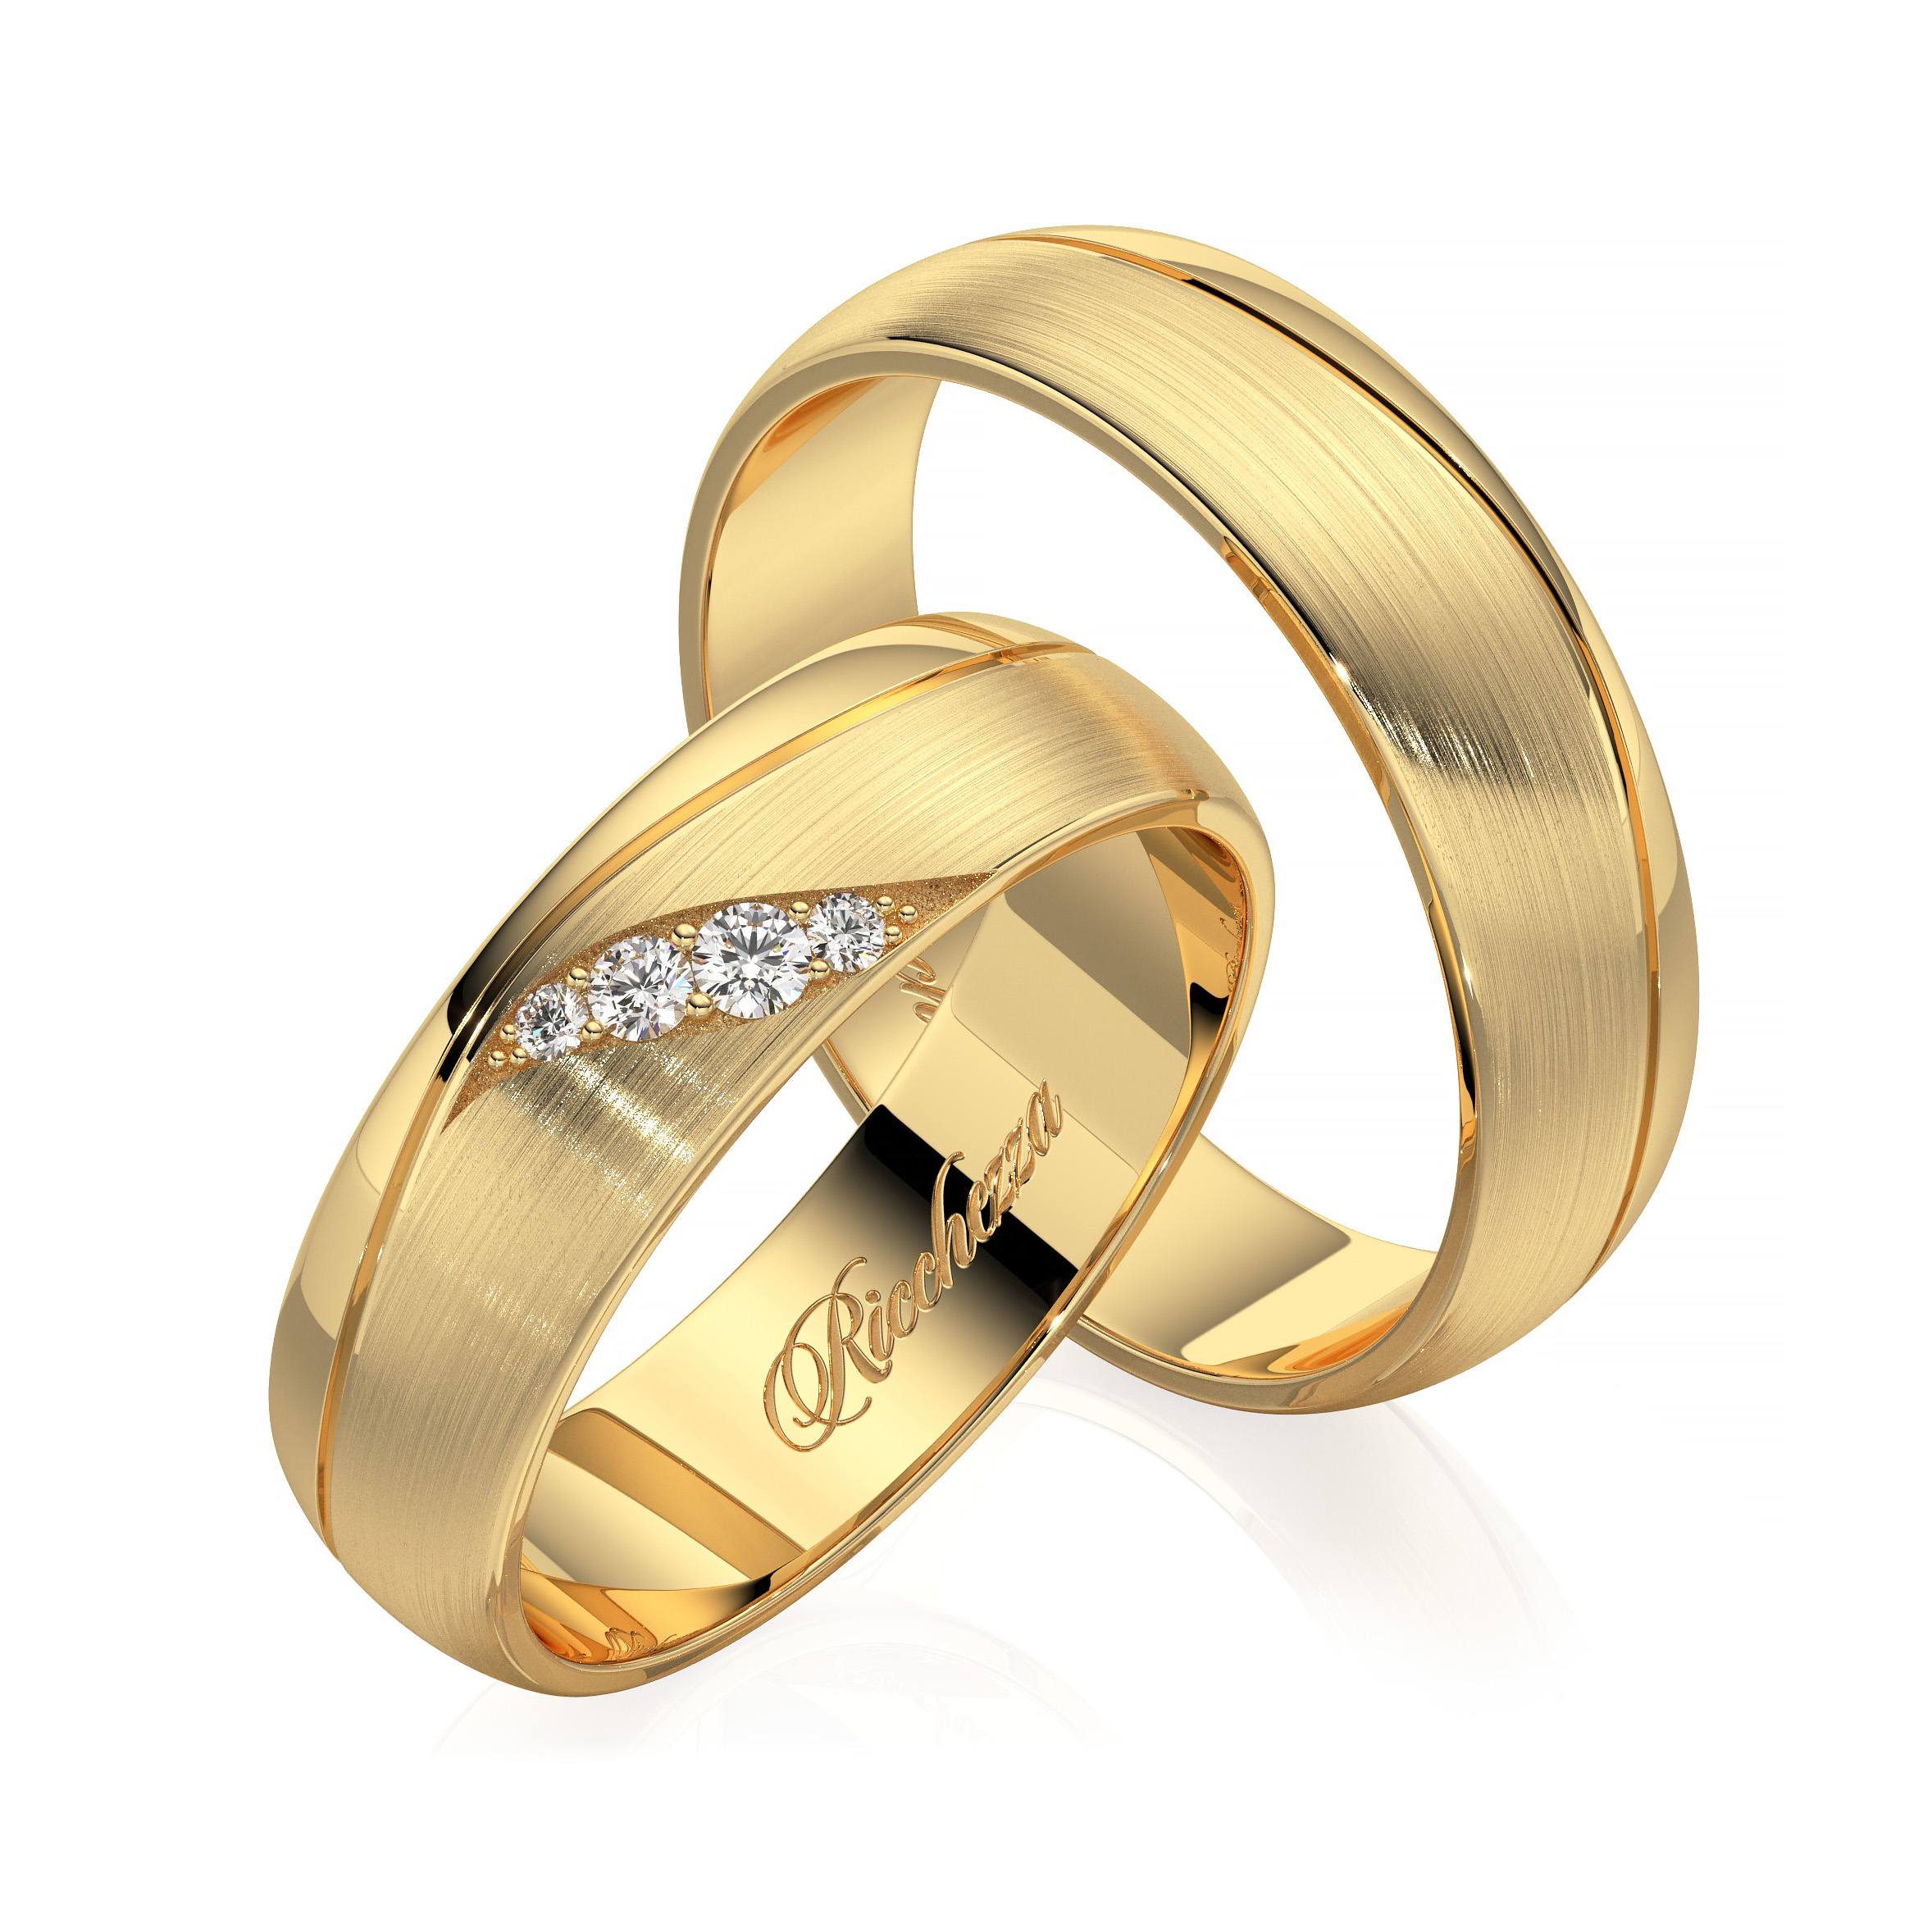 Купить недорого обручальные кольца золото. Свадебные кольца. Кольцо обручальное женское. Свадебные кольца золотые. Красивые обручальные кольца.